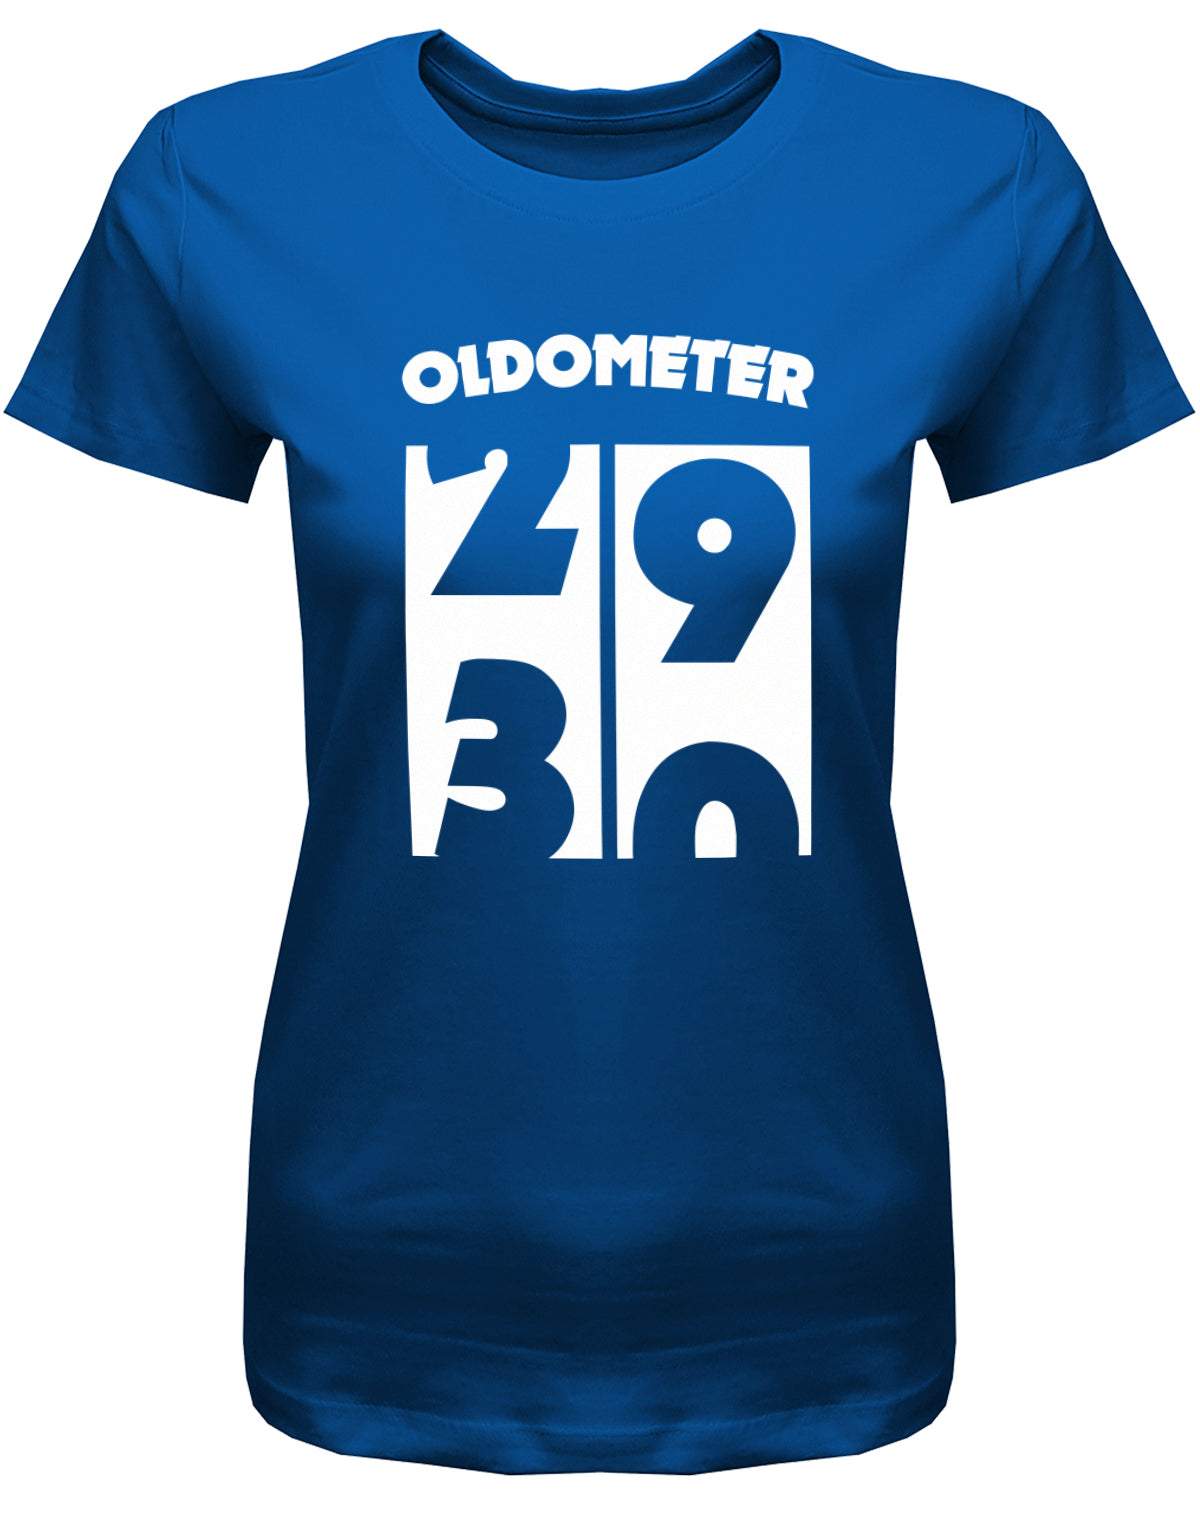 Lustiges T-Shirt zum 30. Geburtstag für die Frau Bedruckt mit Oldometer. Wechsel von 29 auf 30 Jahren. Royalblau